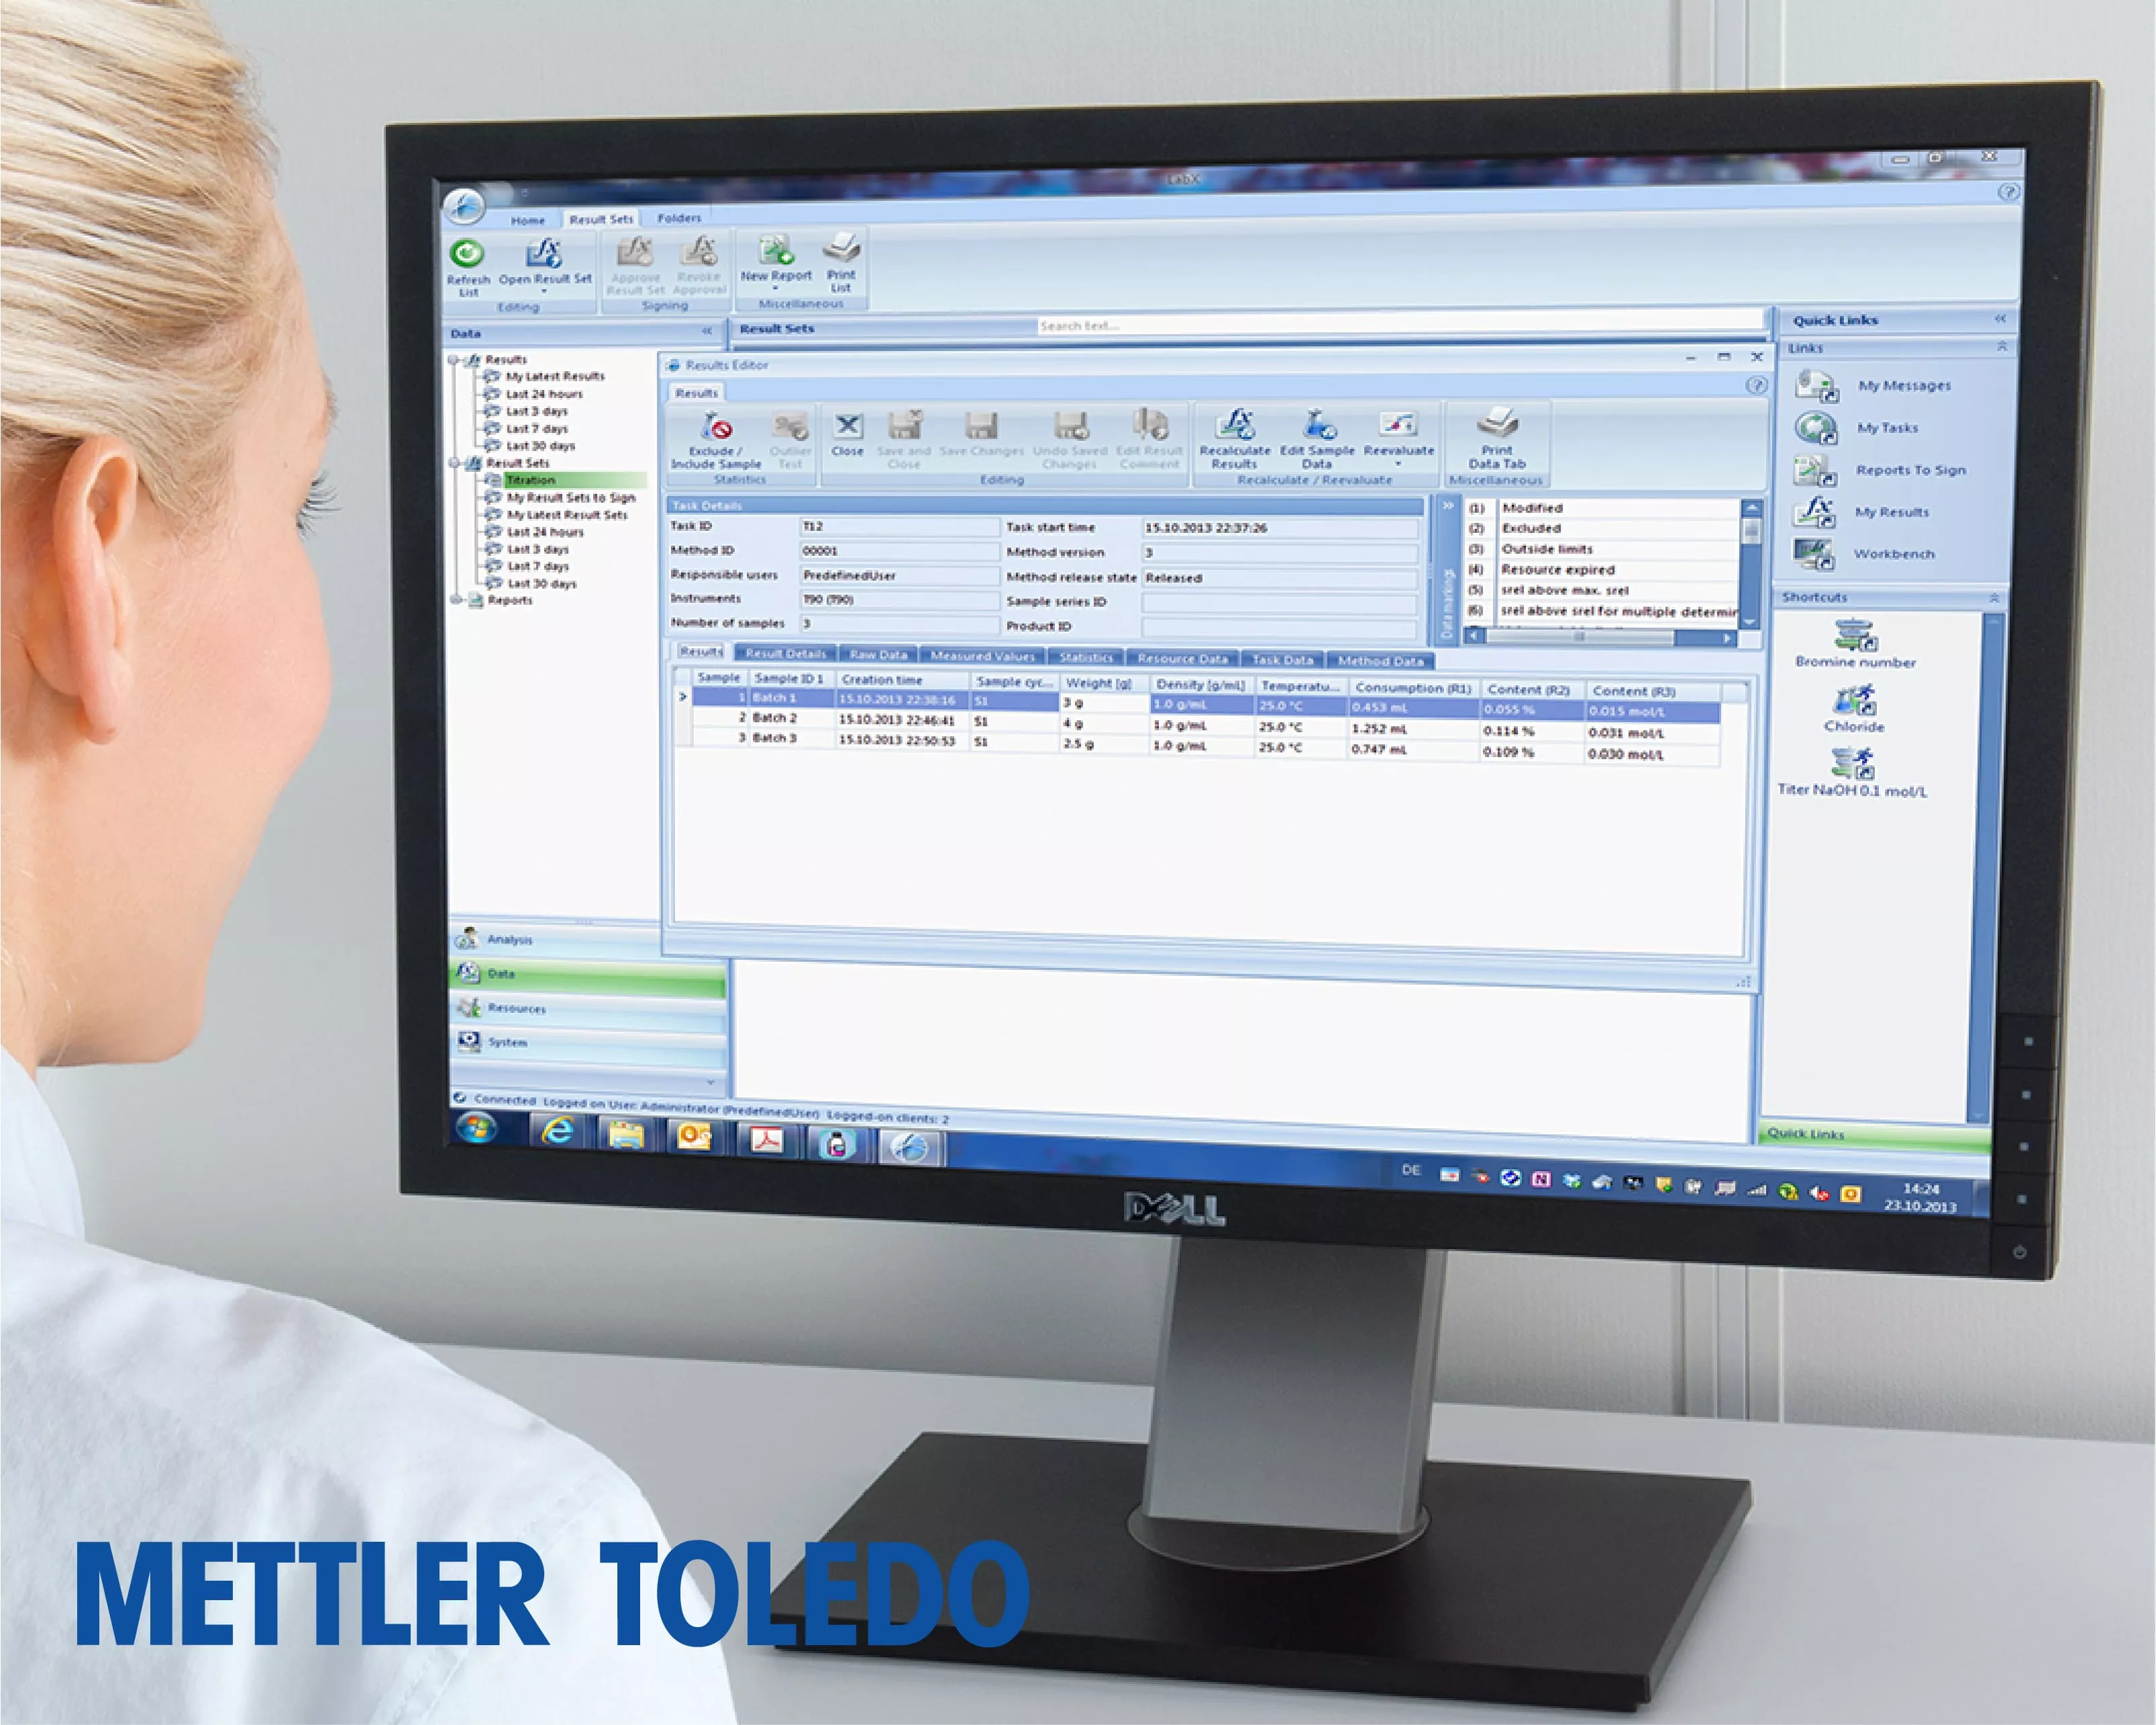 Mettler Toledo Weighbridge Software